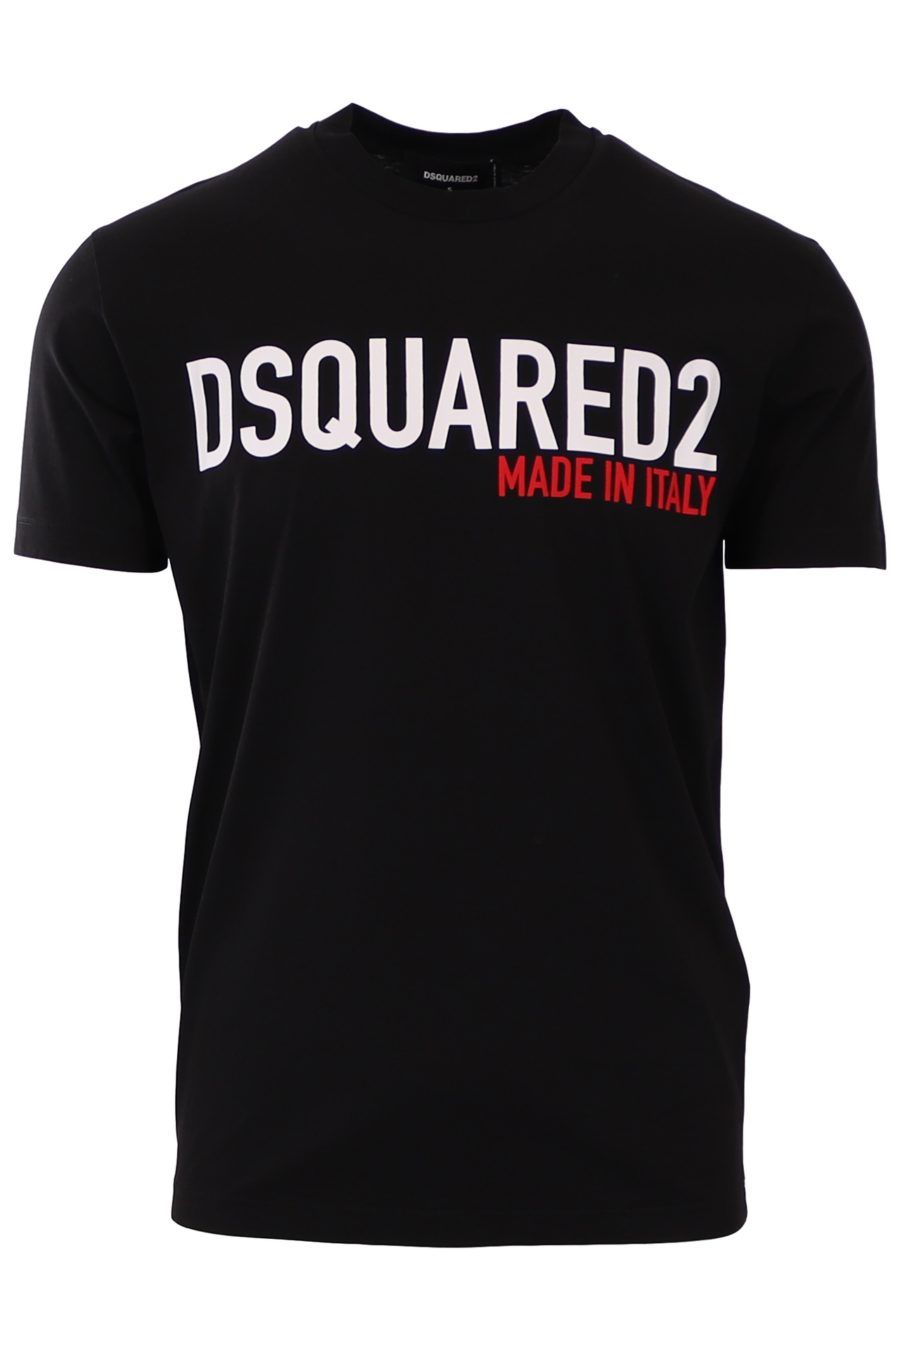 Camiseta Dsquared2 negra logo blanco made in italy - 45c056261d42c27c59f00c286582c632f68caf4d